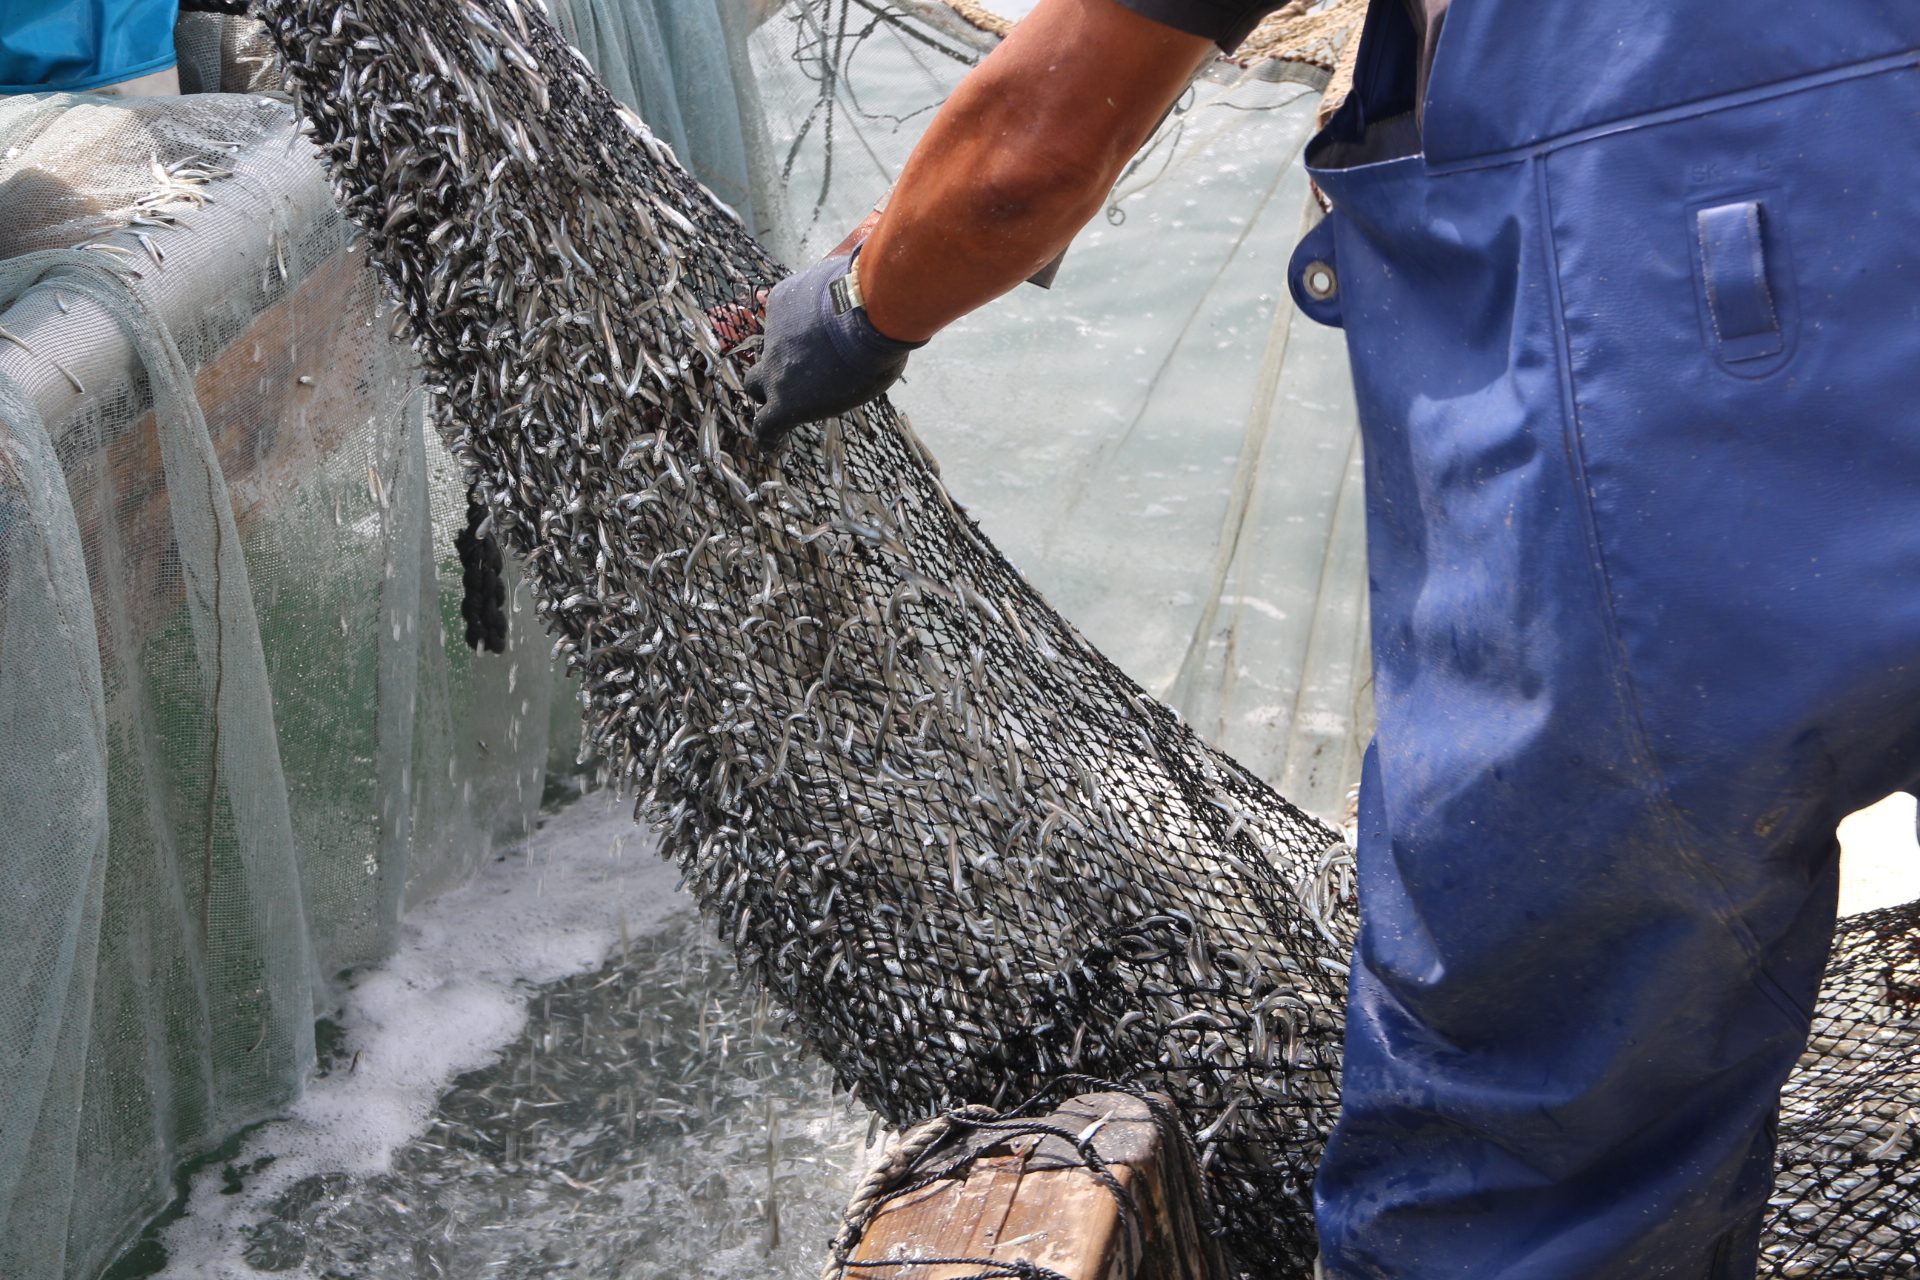 イワシ漁をしている漁師さんがイワシでいっぱいになった網を引き揚げている写真